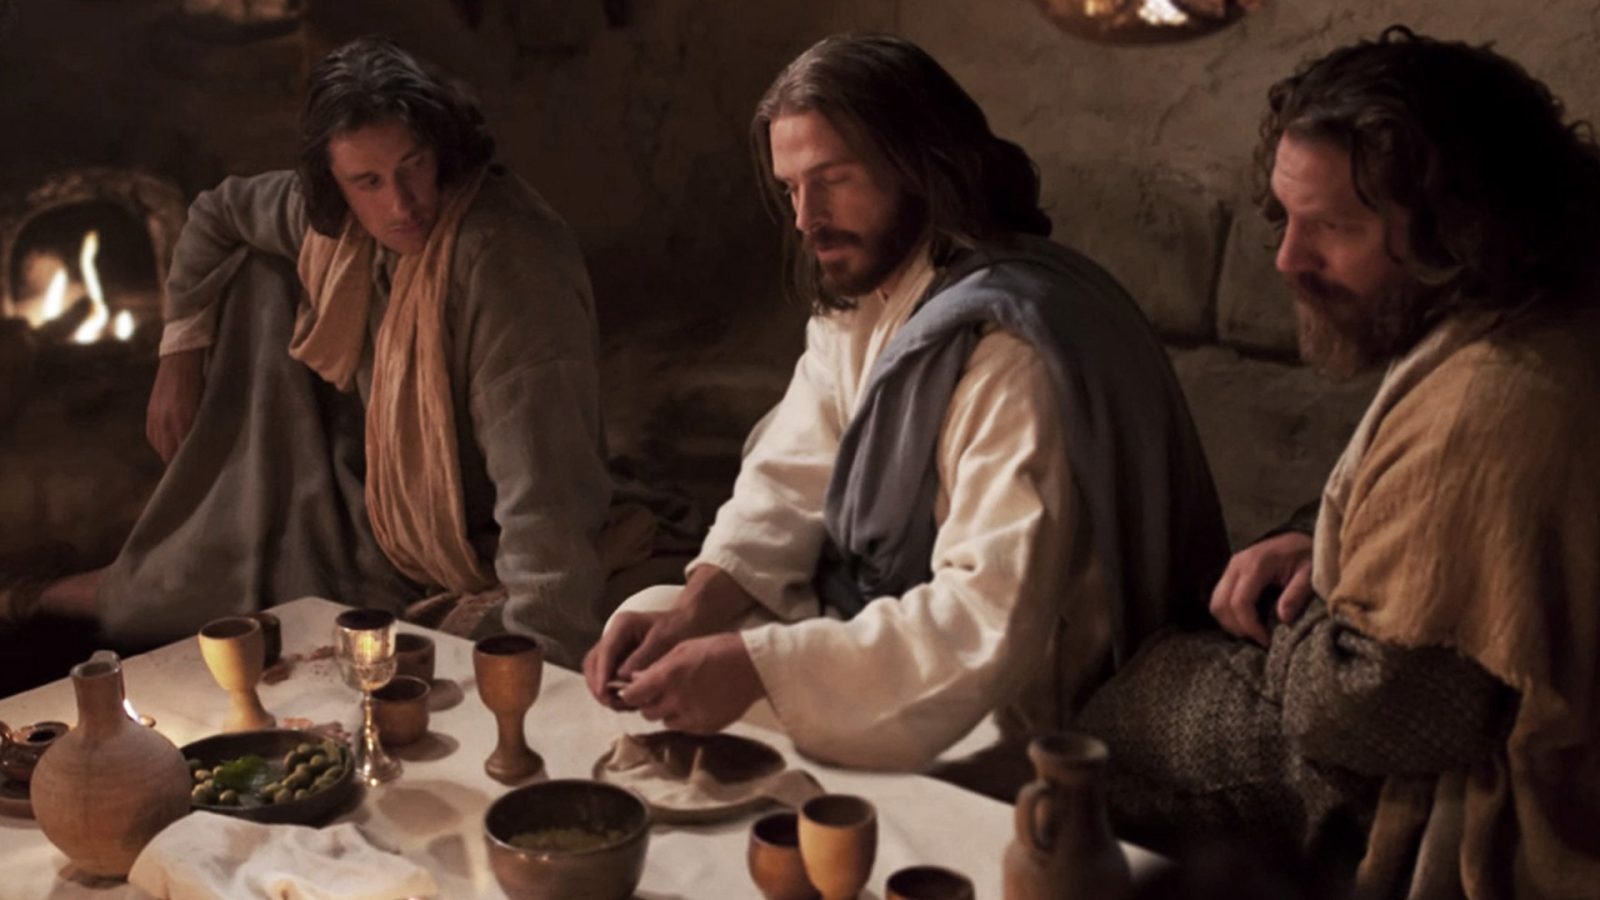 Koje je blagdane Isus slavio?